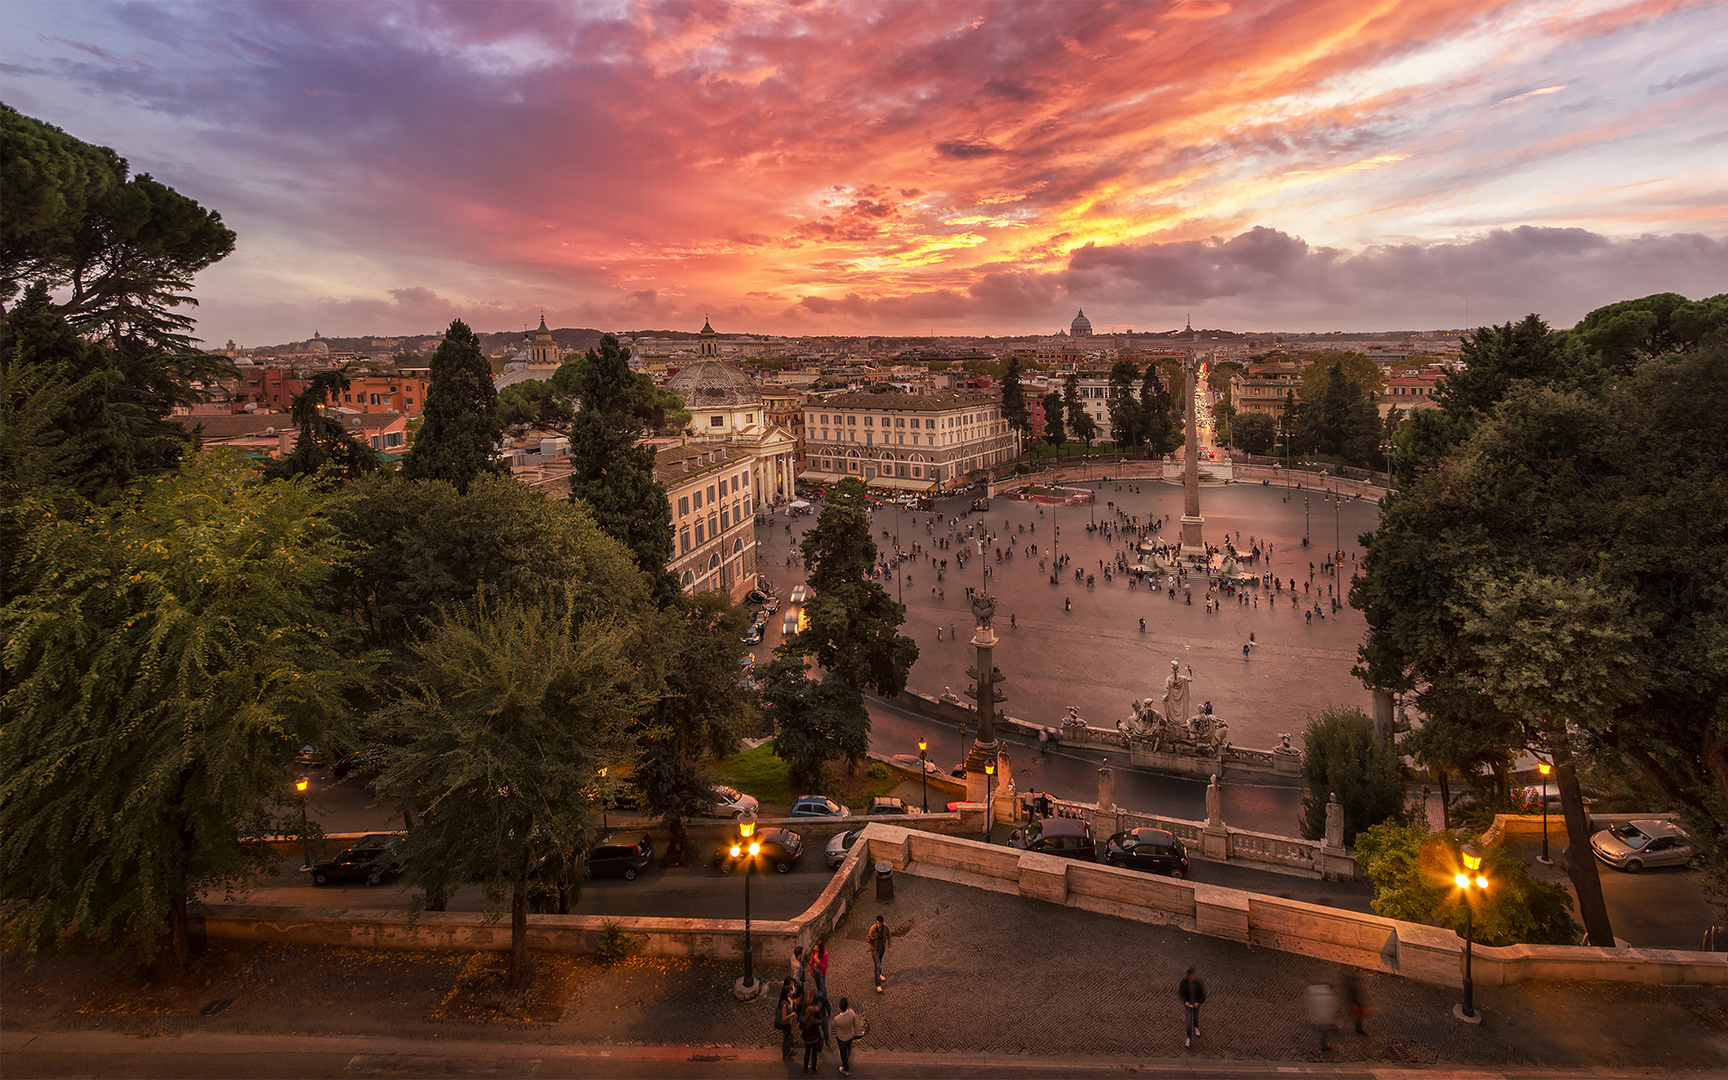 Sunset @ Piazza del Popolo